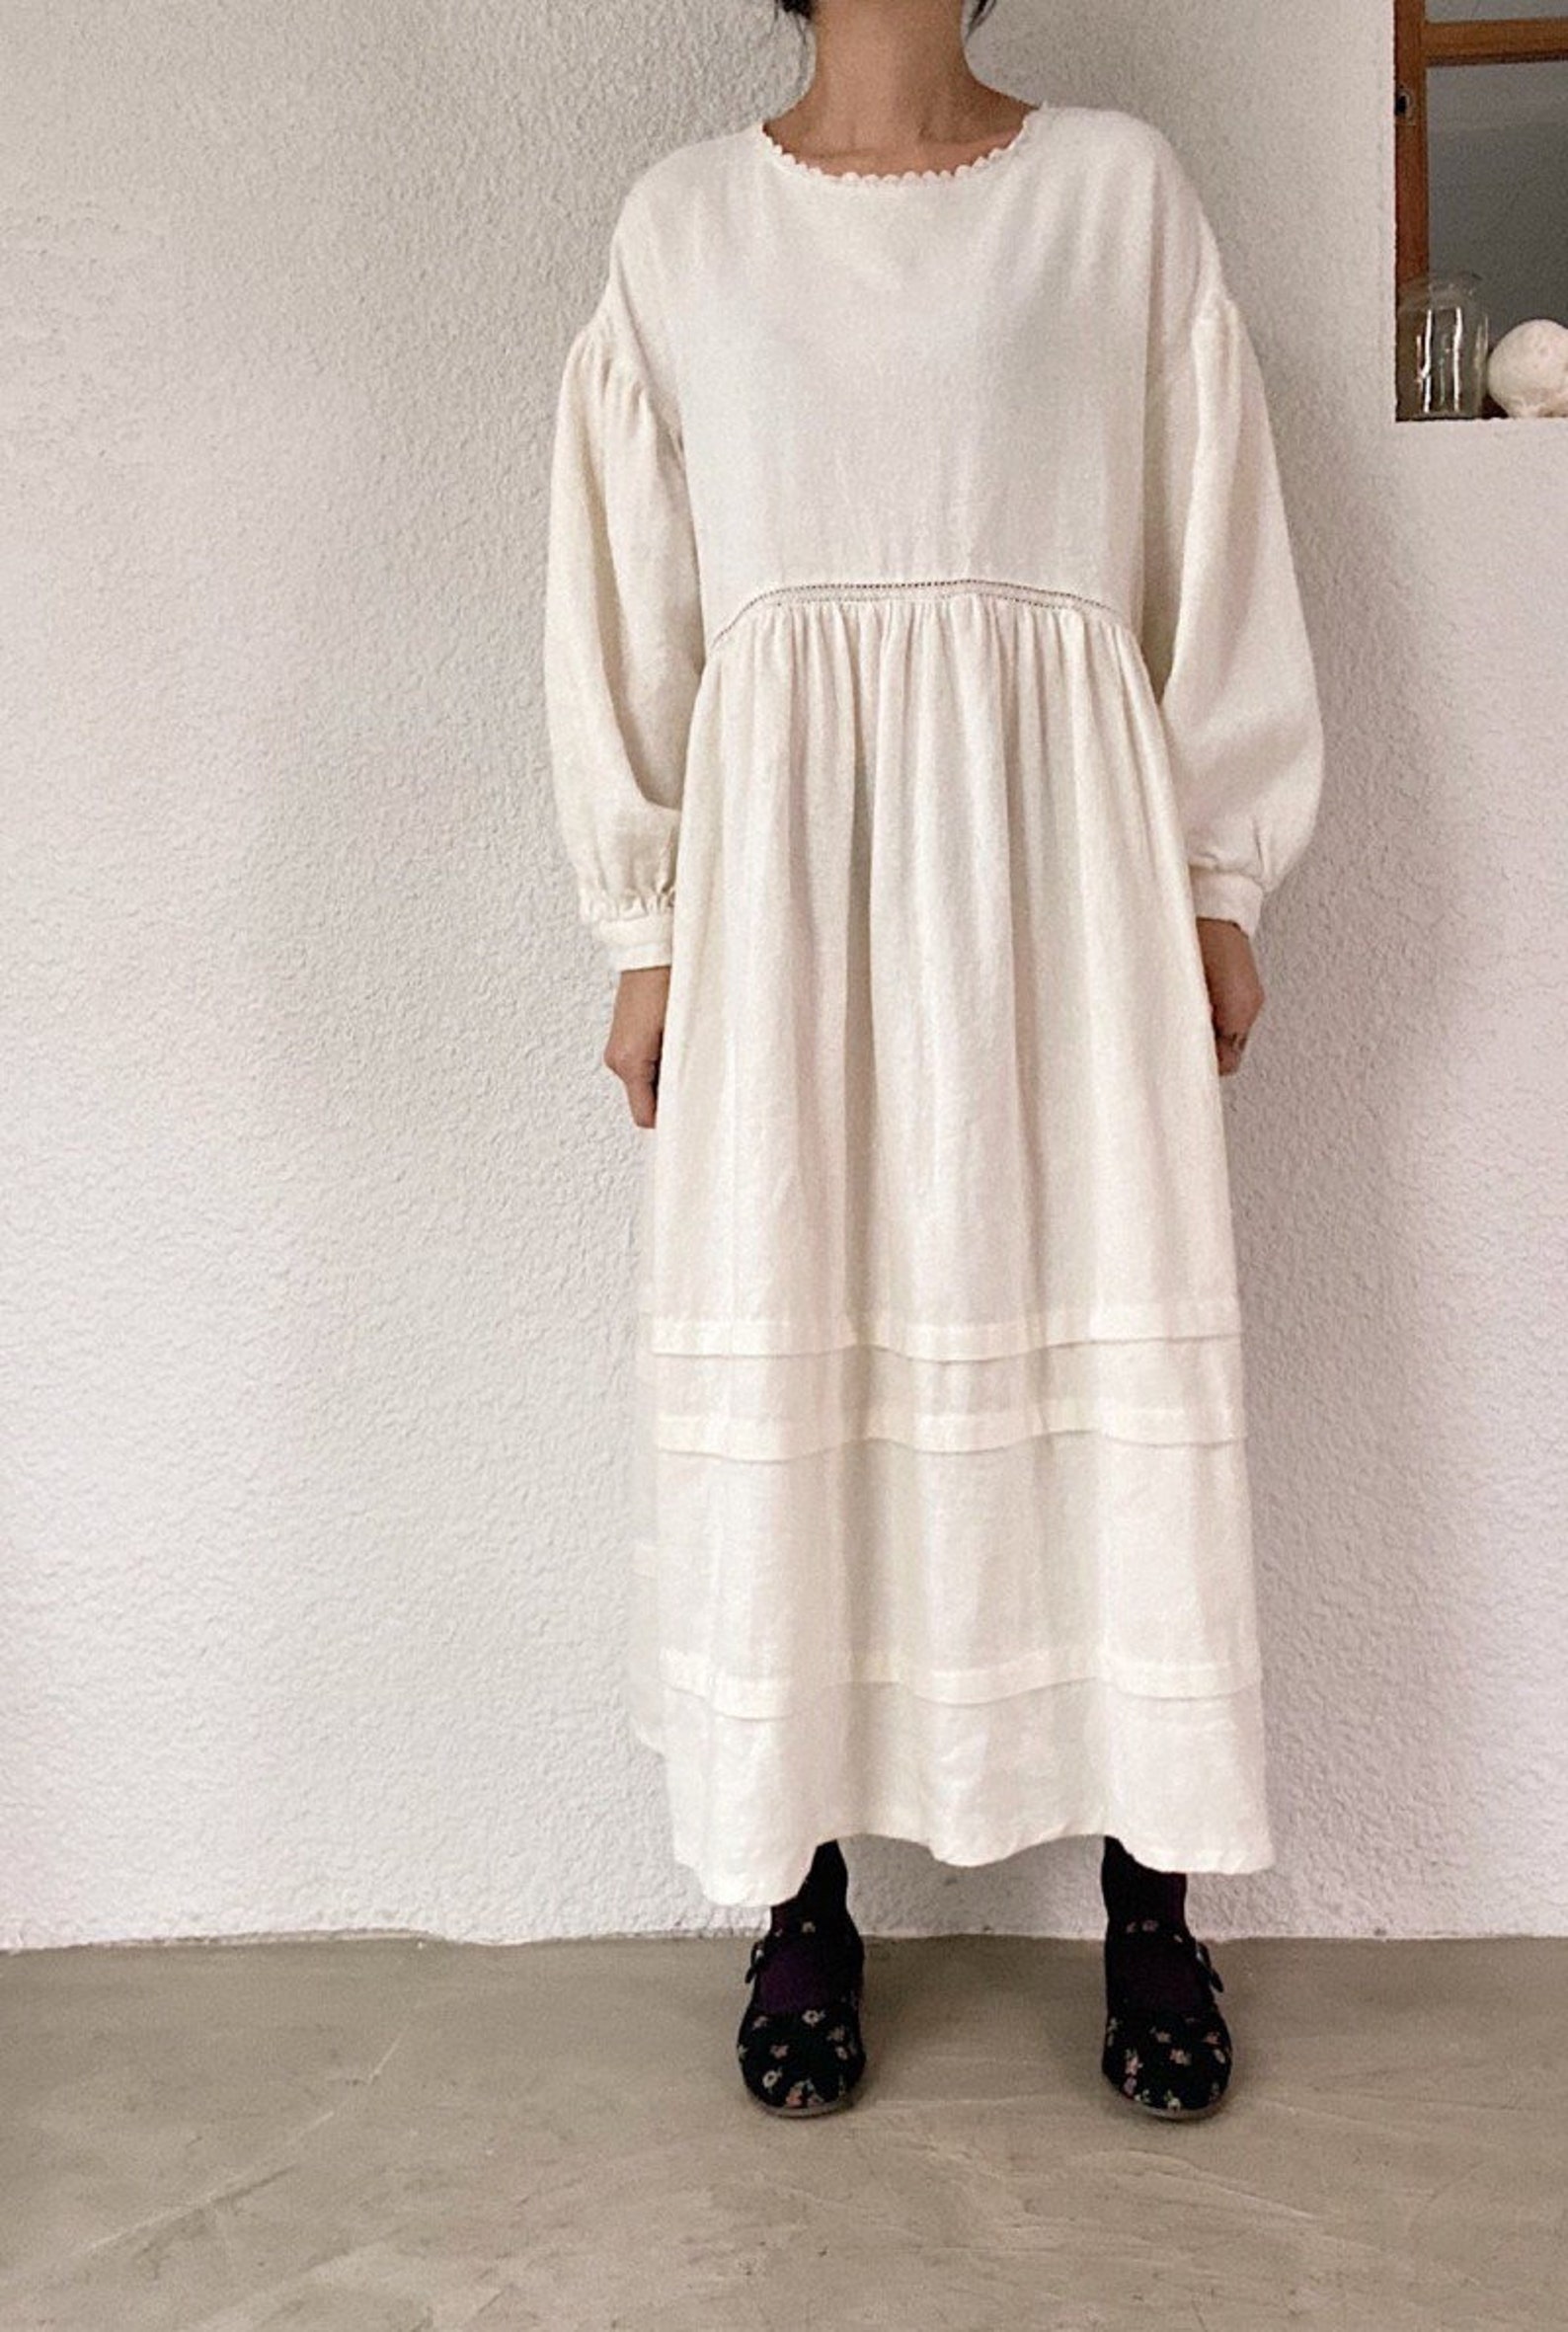 Pilgrim Maxi Dress Cottage Linen and Cotton Maxi Dress Lace - Etsy